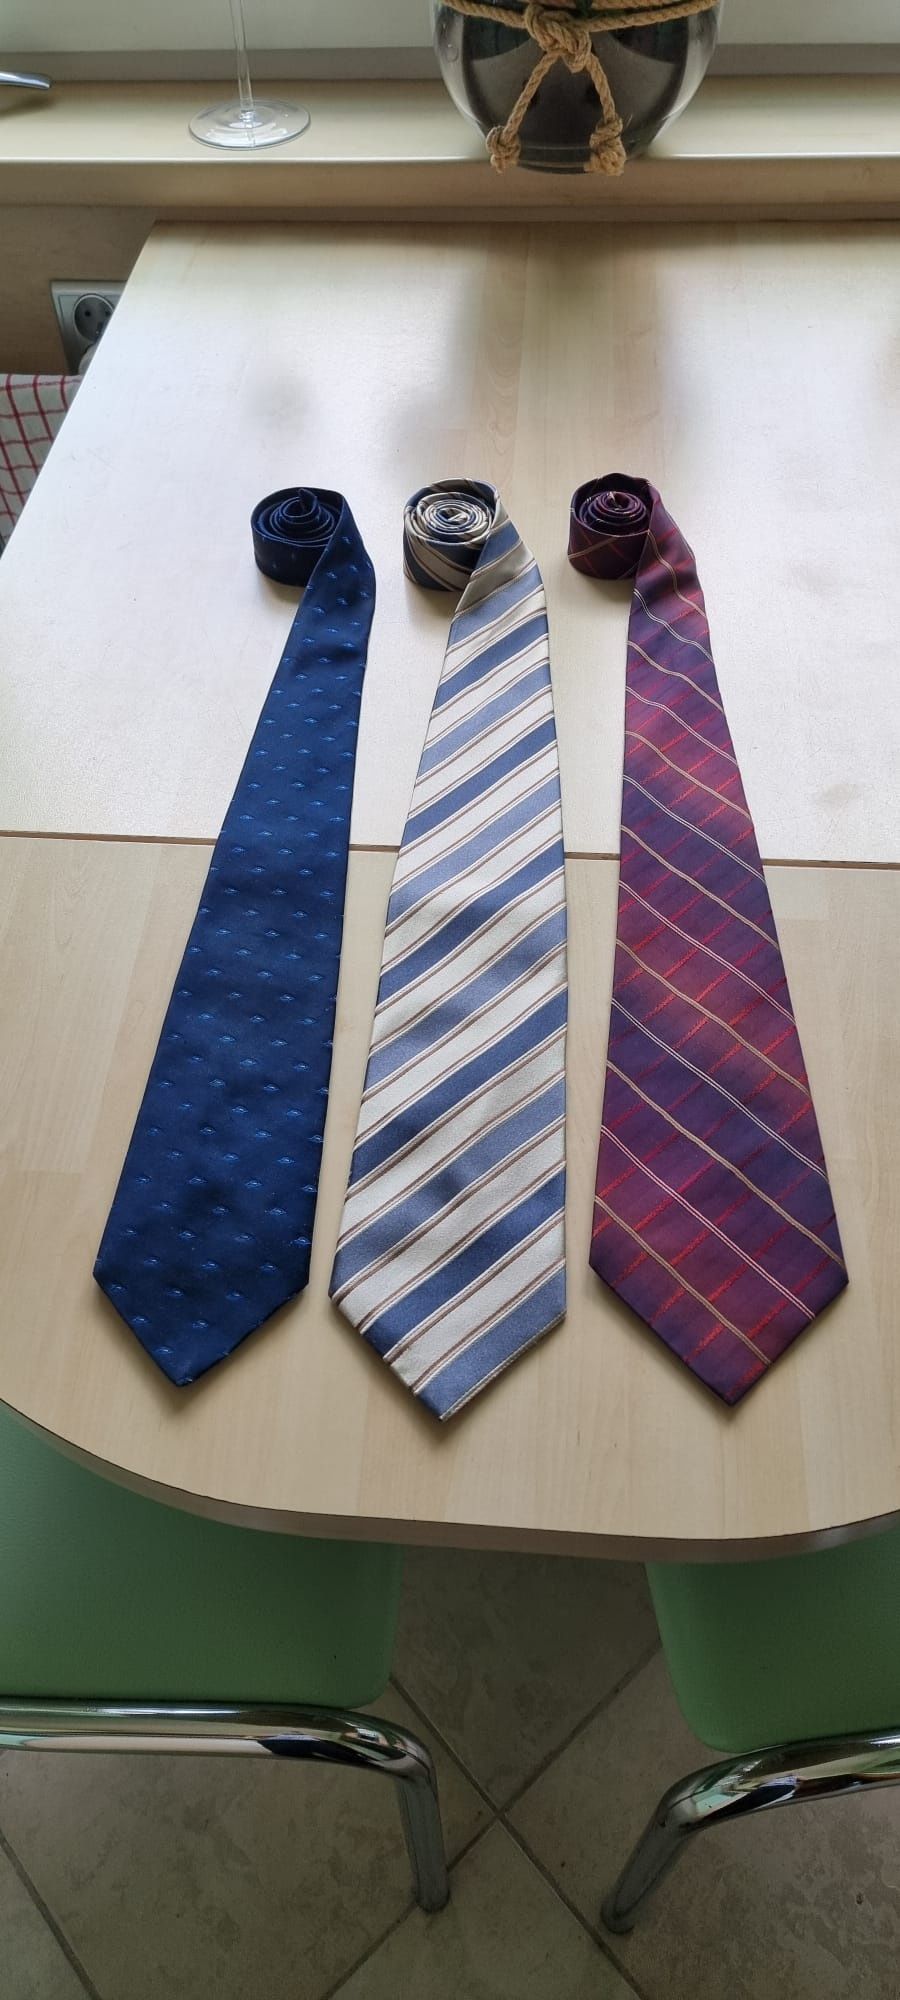 Wyprzedaż krawatów - komplet 3 sztuk